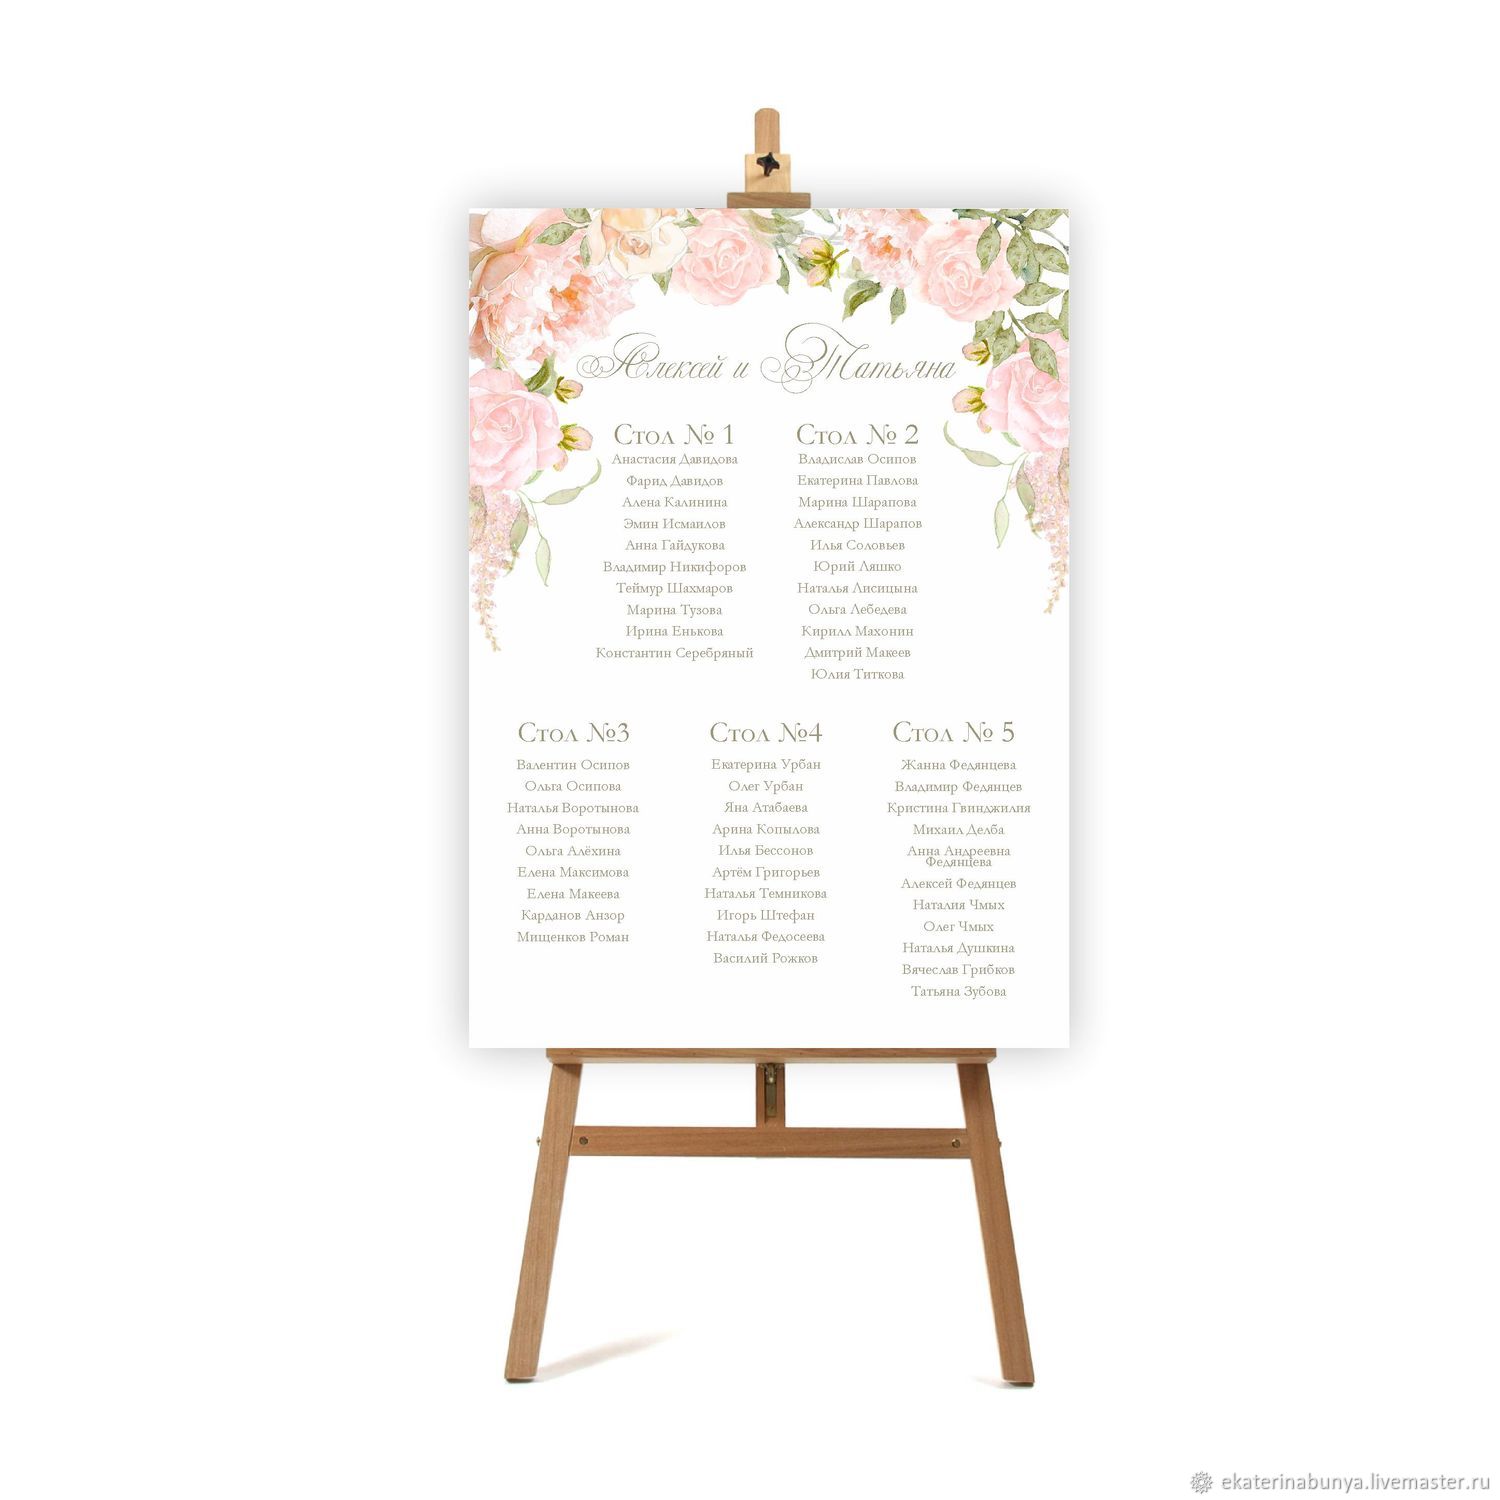 Список рассадки гостей на свадьбе образец